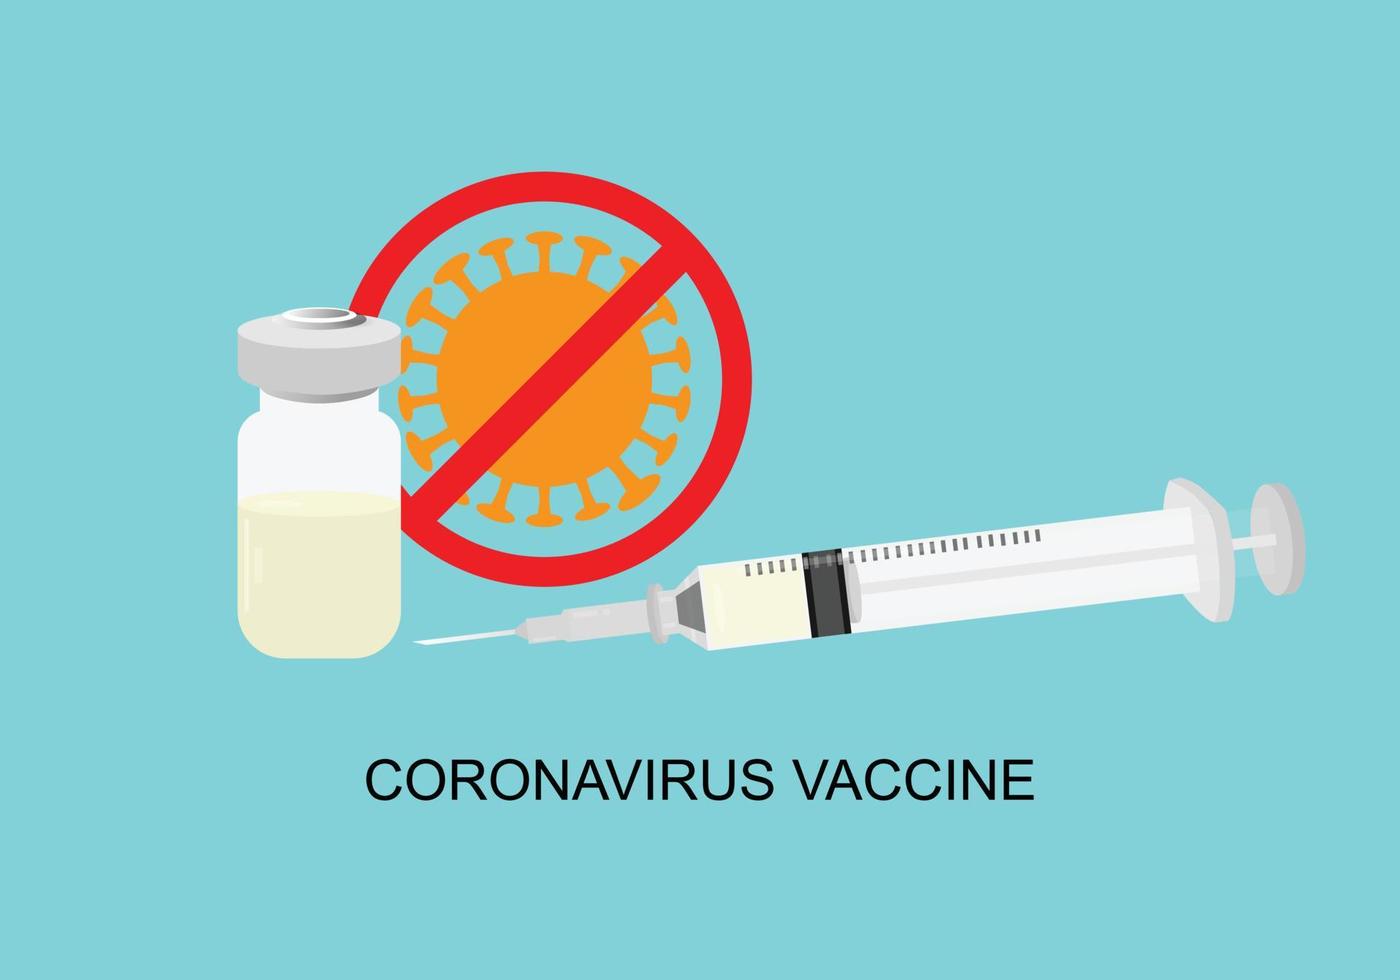 koncept med vaccin för att förebygga coronavirus eller covid-19 pandemiutbrott. vektor